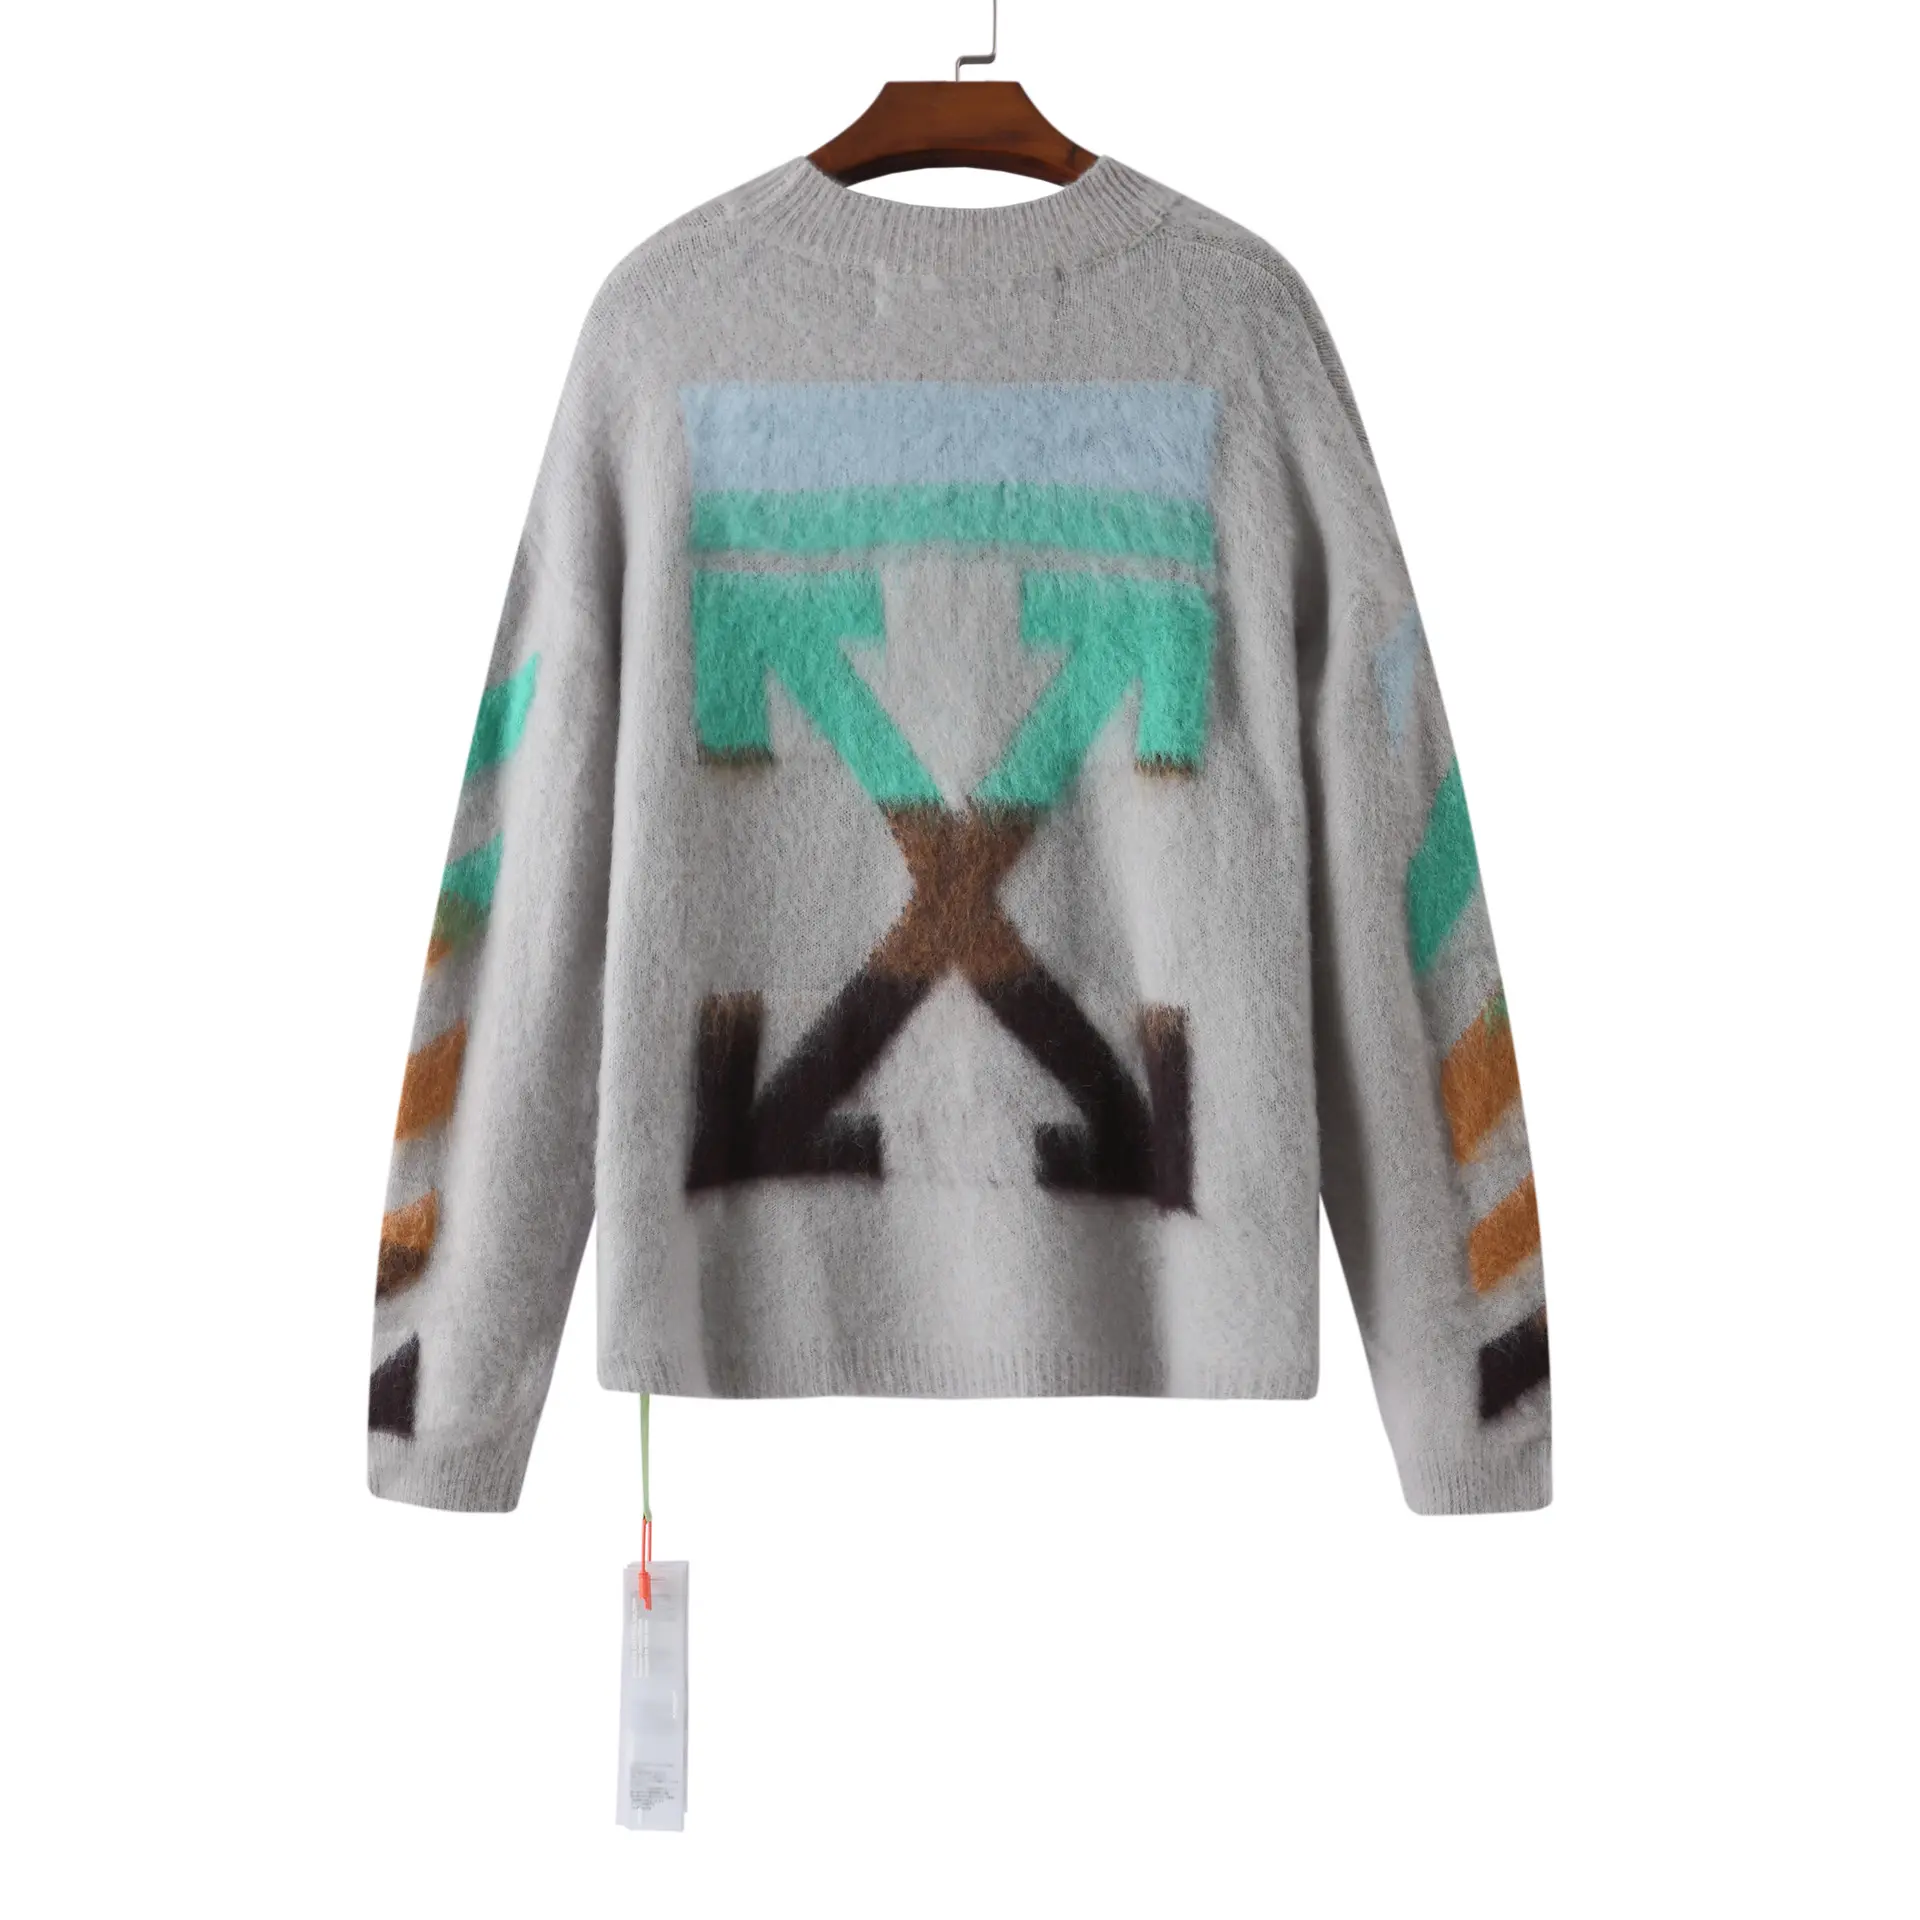 IHJ6912 Sweater Pullover Pria, Sweater Kasual Lengan Panjang Mohair